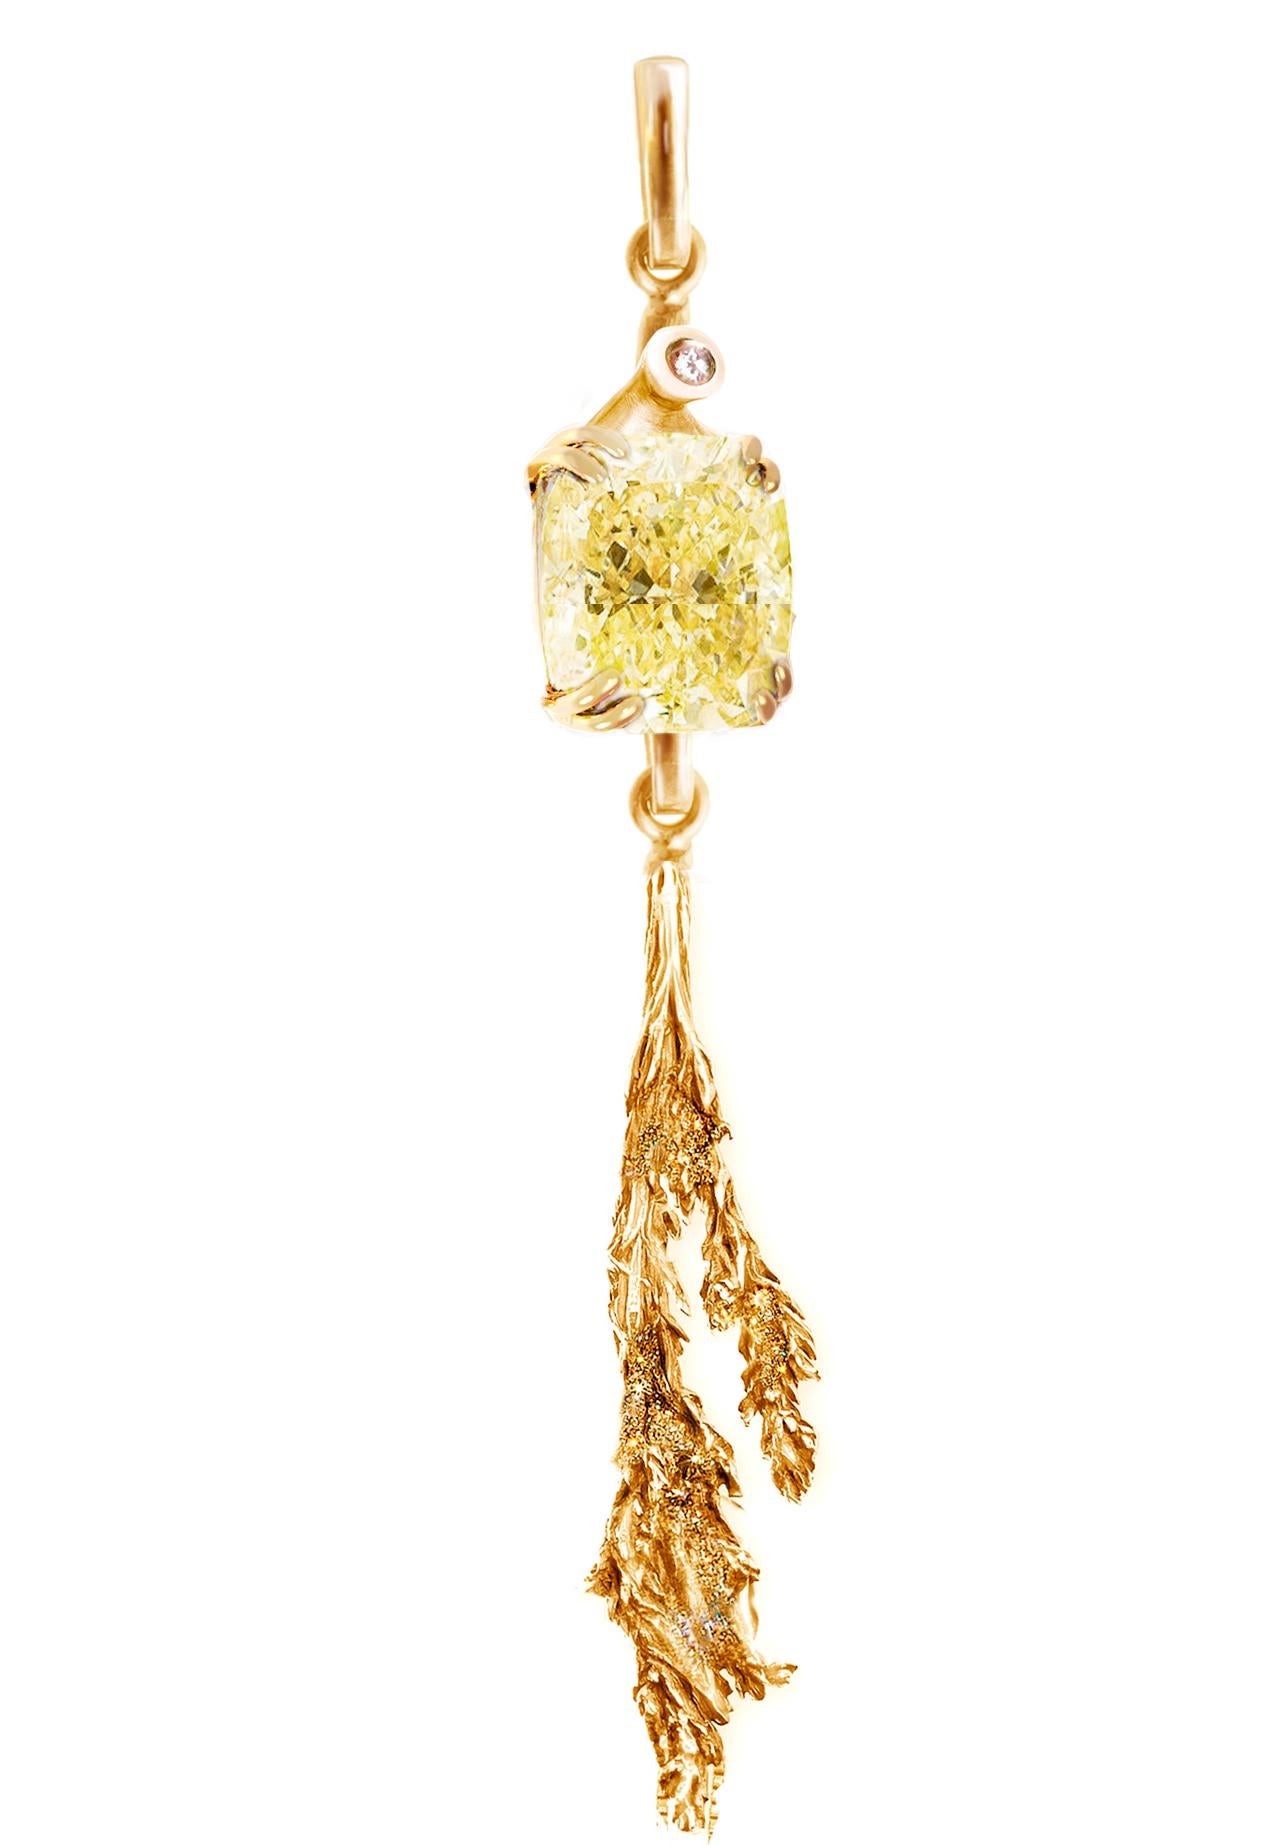 La broche contemporaine Juniper (7 cm) est réalisée en or rose 18 carats et présente un diamant jaune certifié de taille coussin (SI, Y-Z, 2,02 carats au total). La collection a déjà fait l'objet d'un article dans Vogue S et a été mentionnée dans la